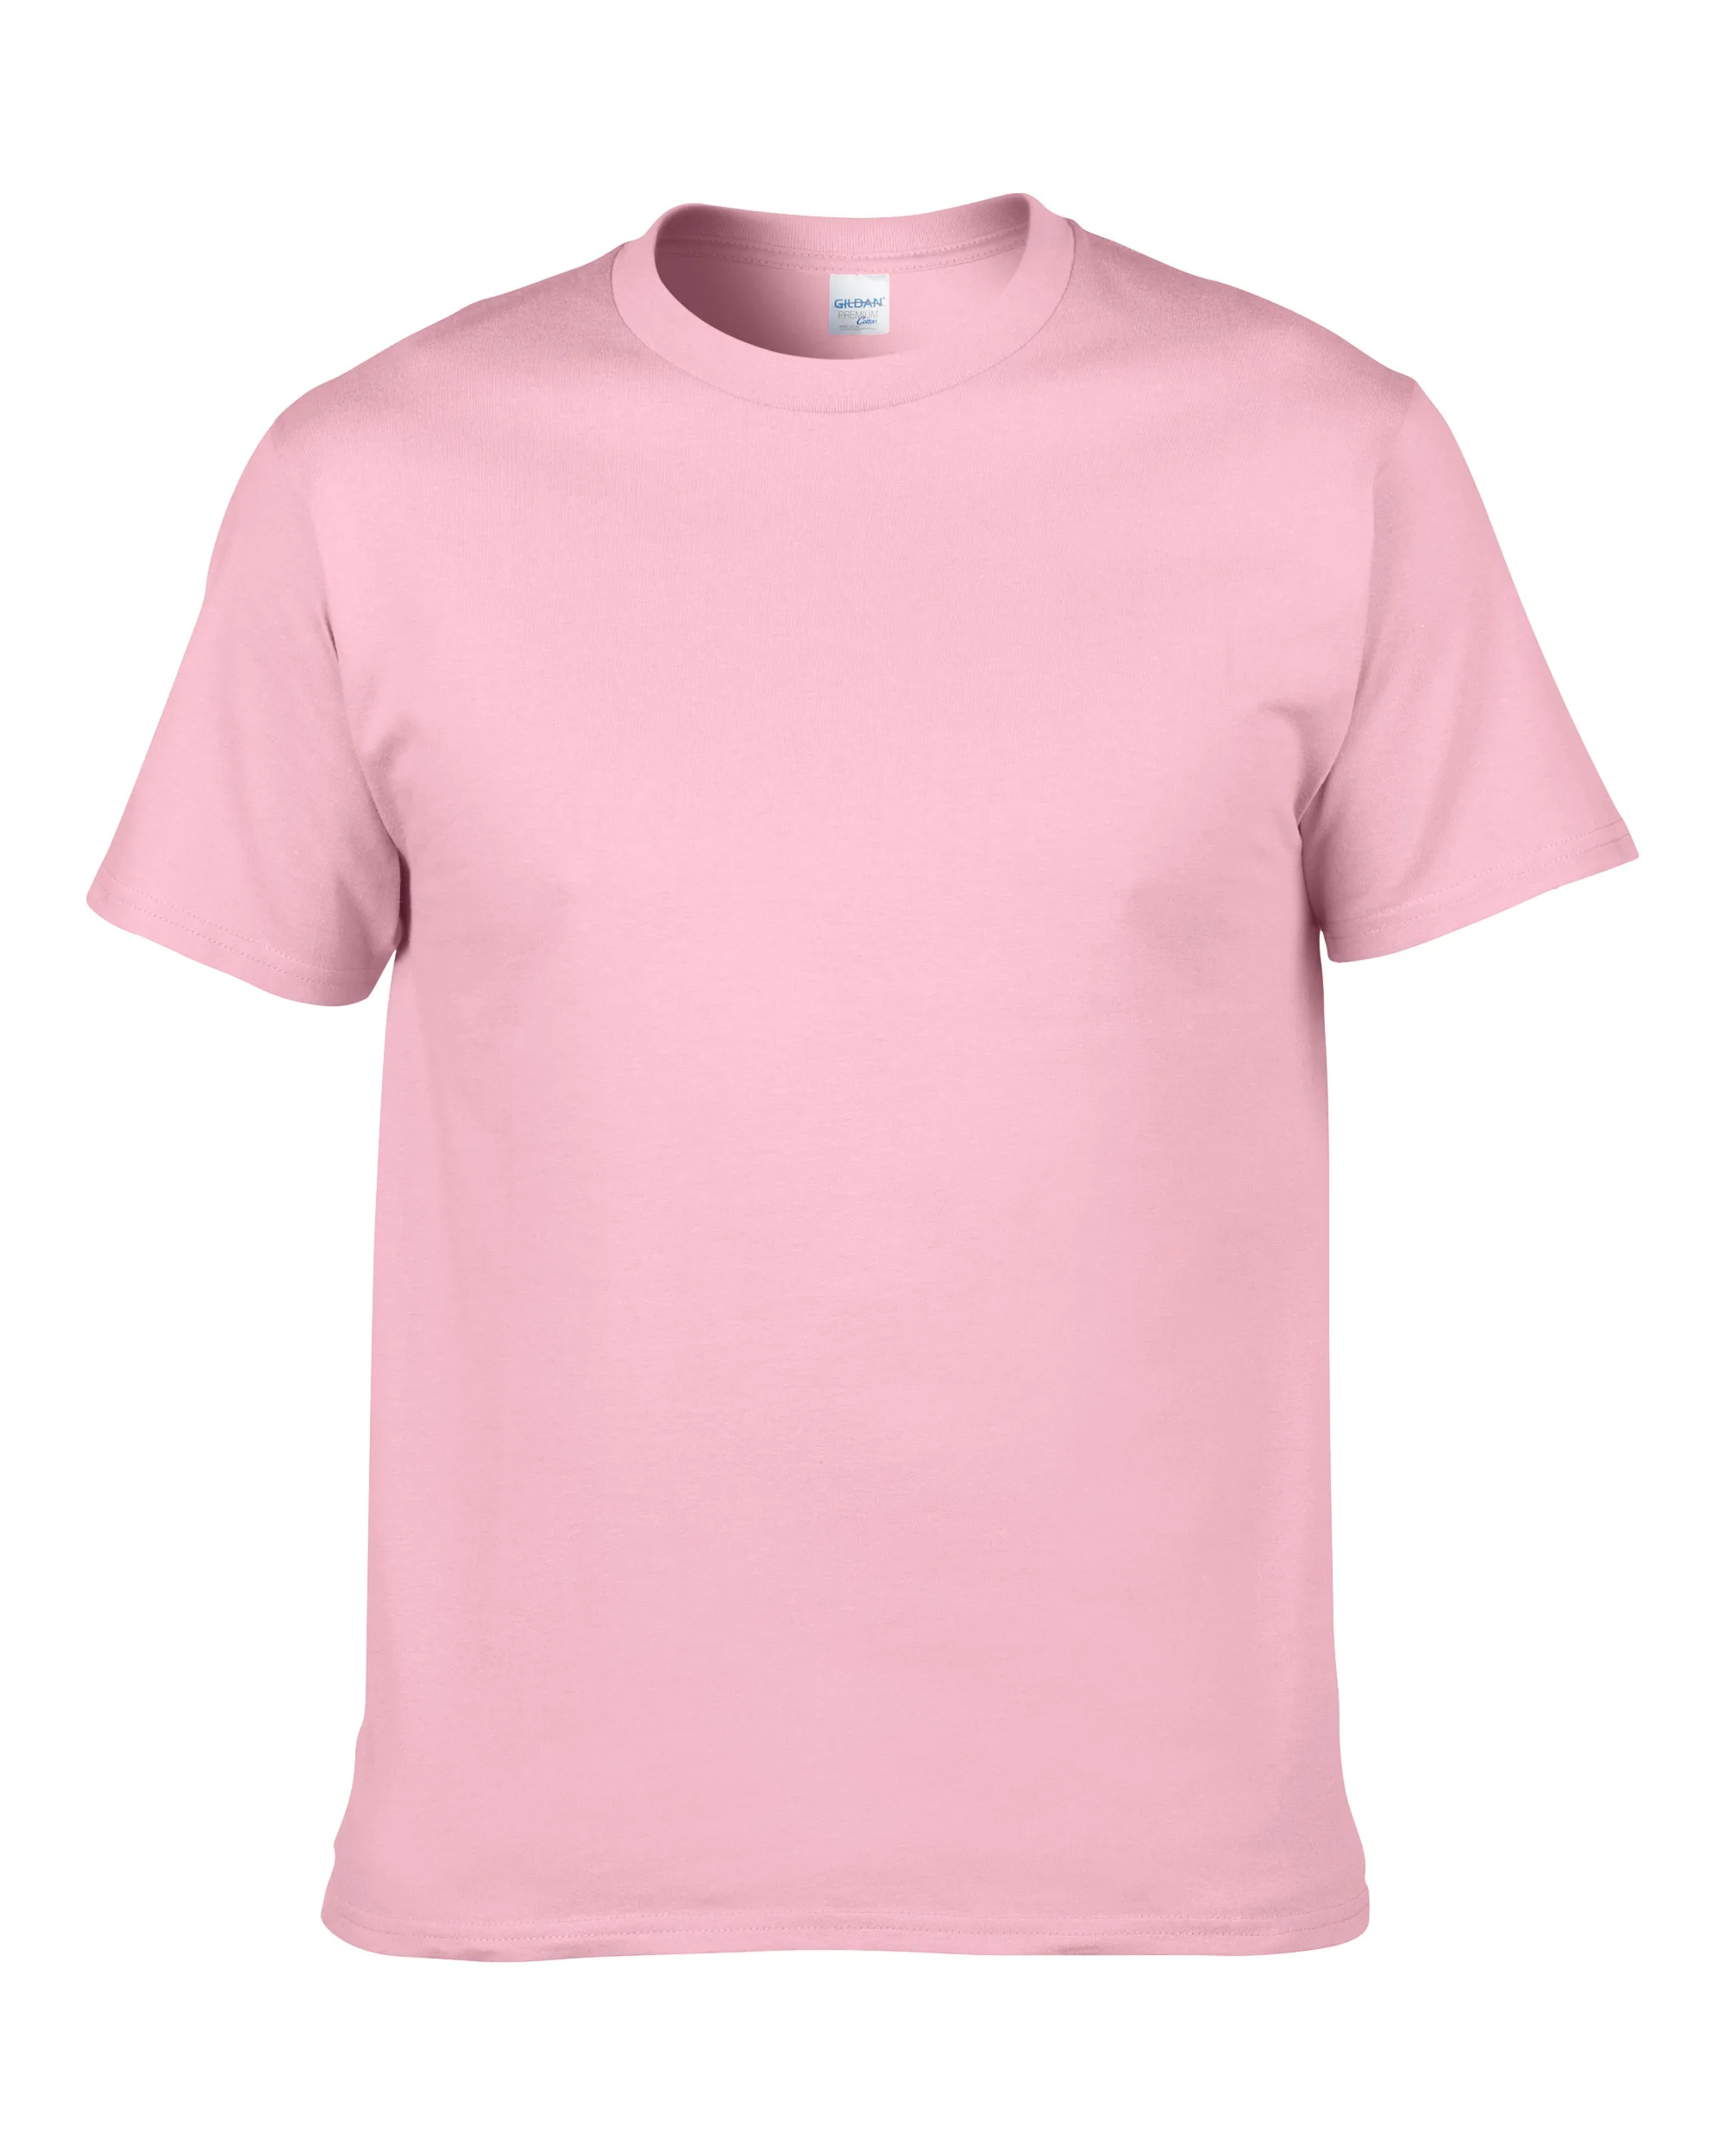 Изготовленная на заказ футболка с рисунком фото напечатанный спереди или оба DIY логотип хлопковая футболка